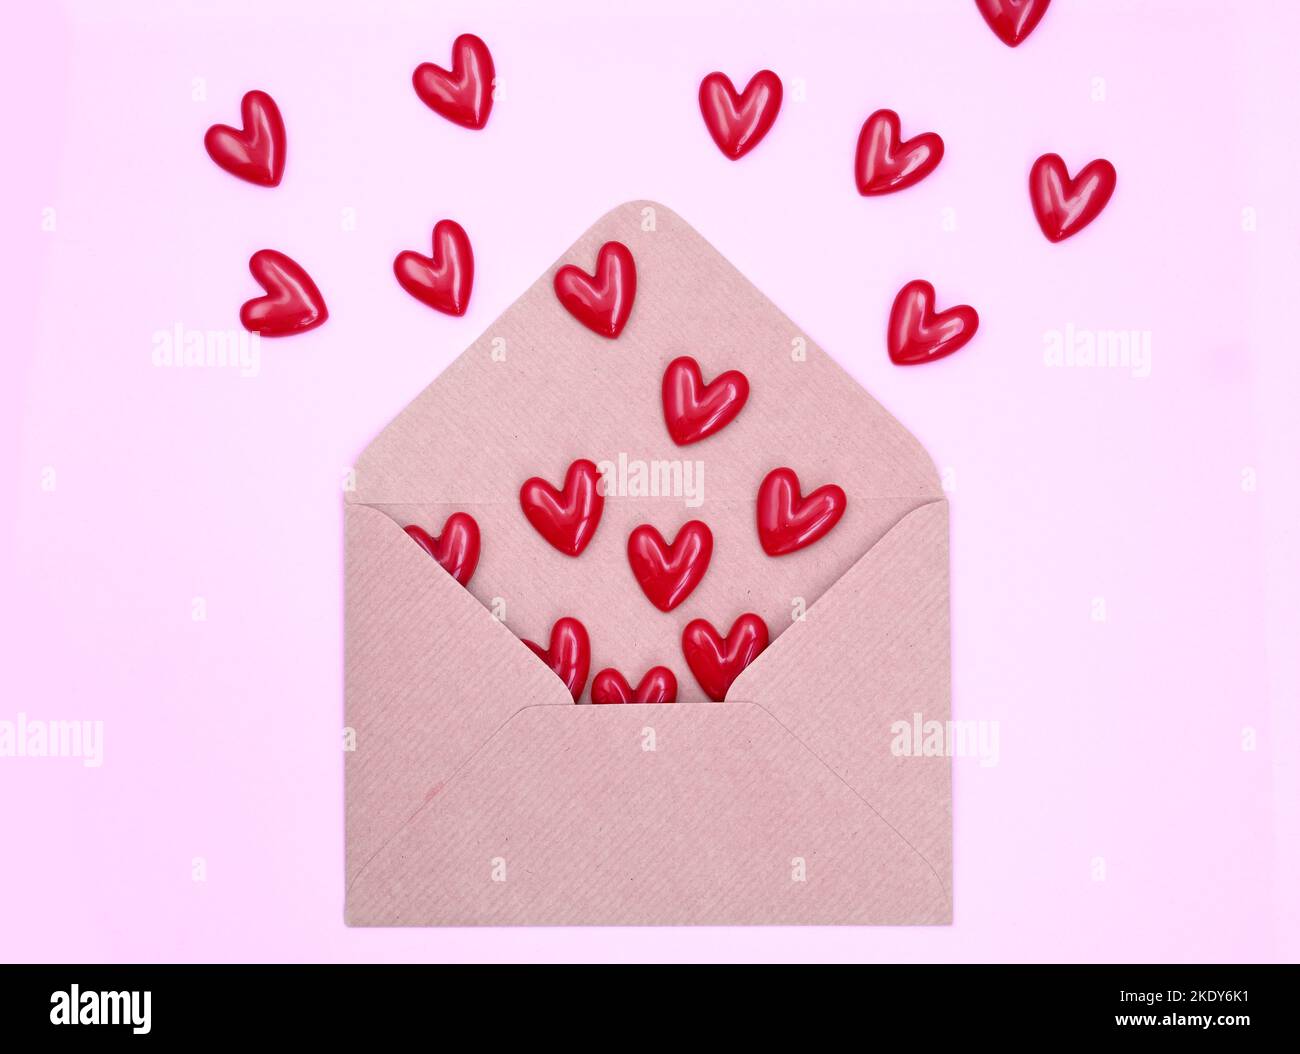 Enveloppe et coeurs rouges sur fond rose. Concept de Saint-Valentin, amour, anniversaire Banque D'Images